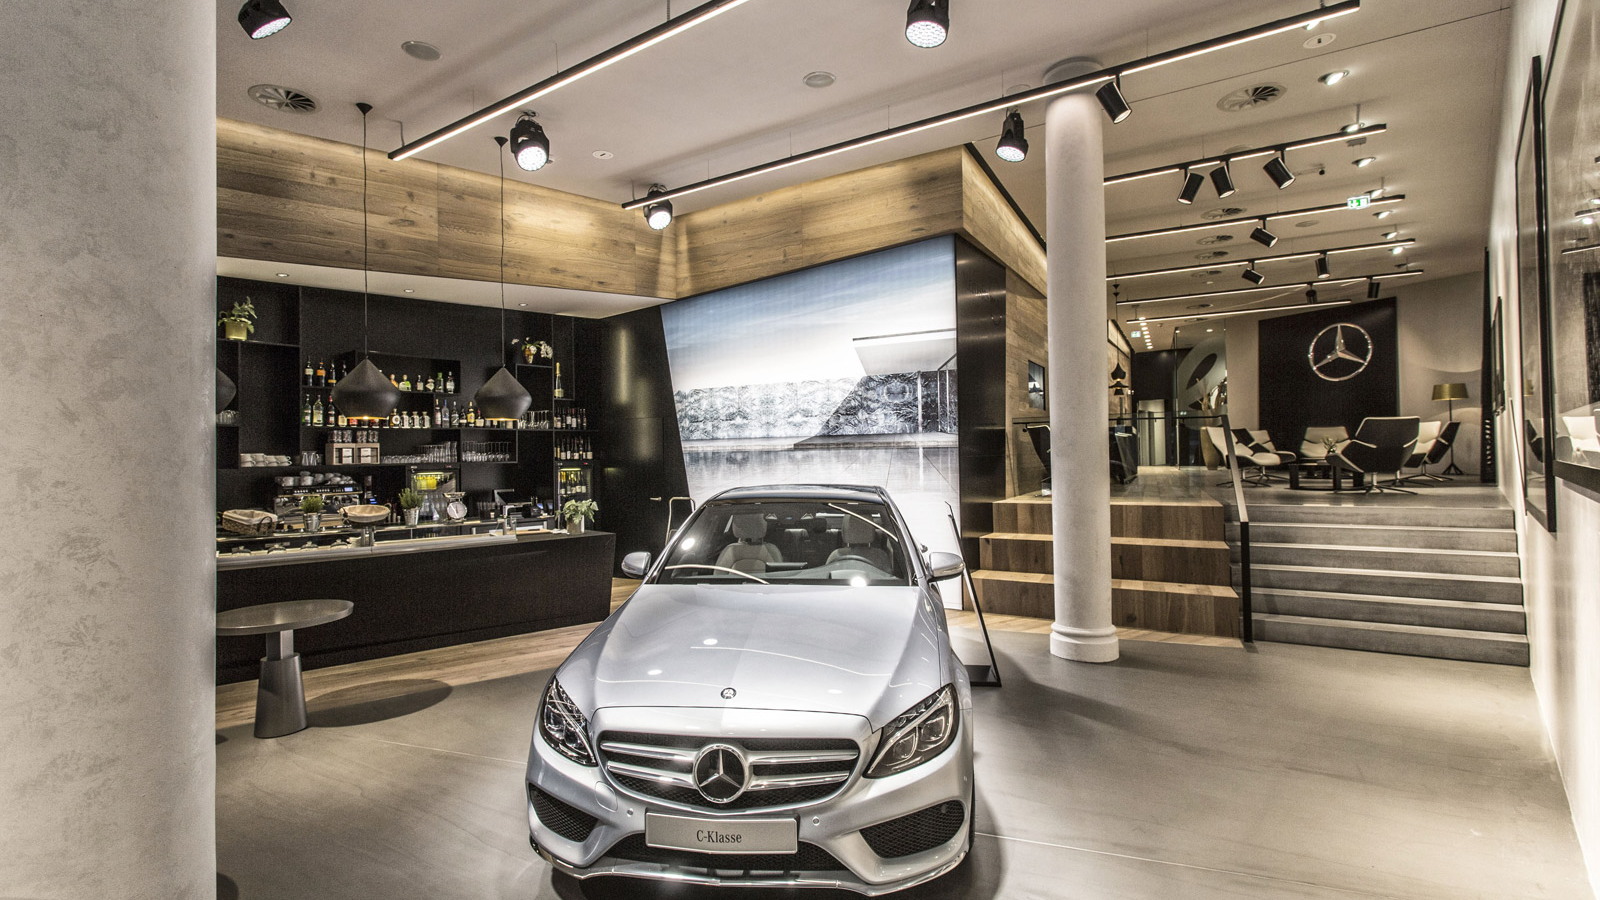 Mercedes me brand store in Hamburg, Germany